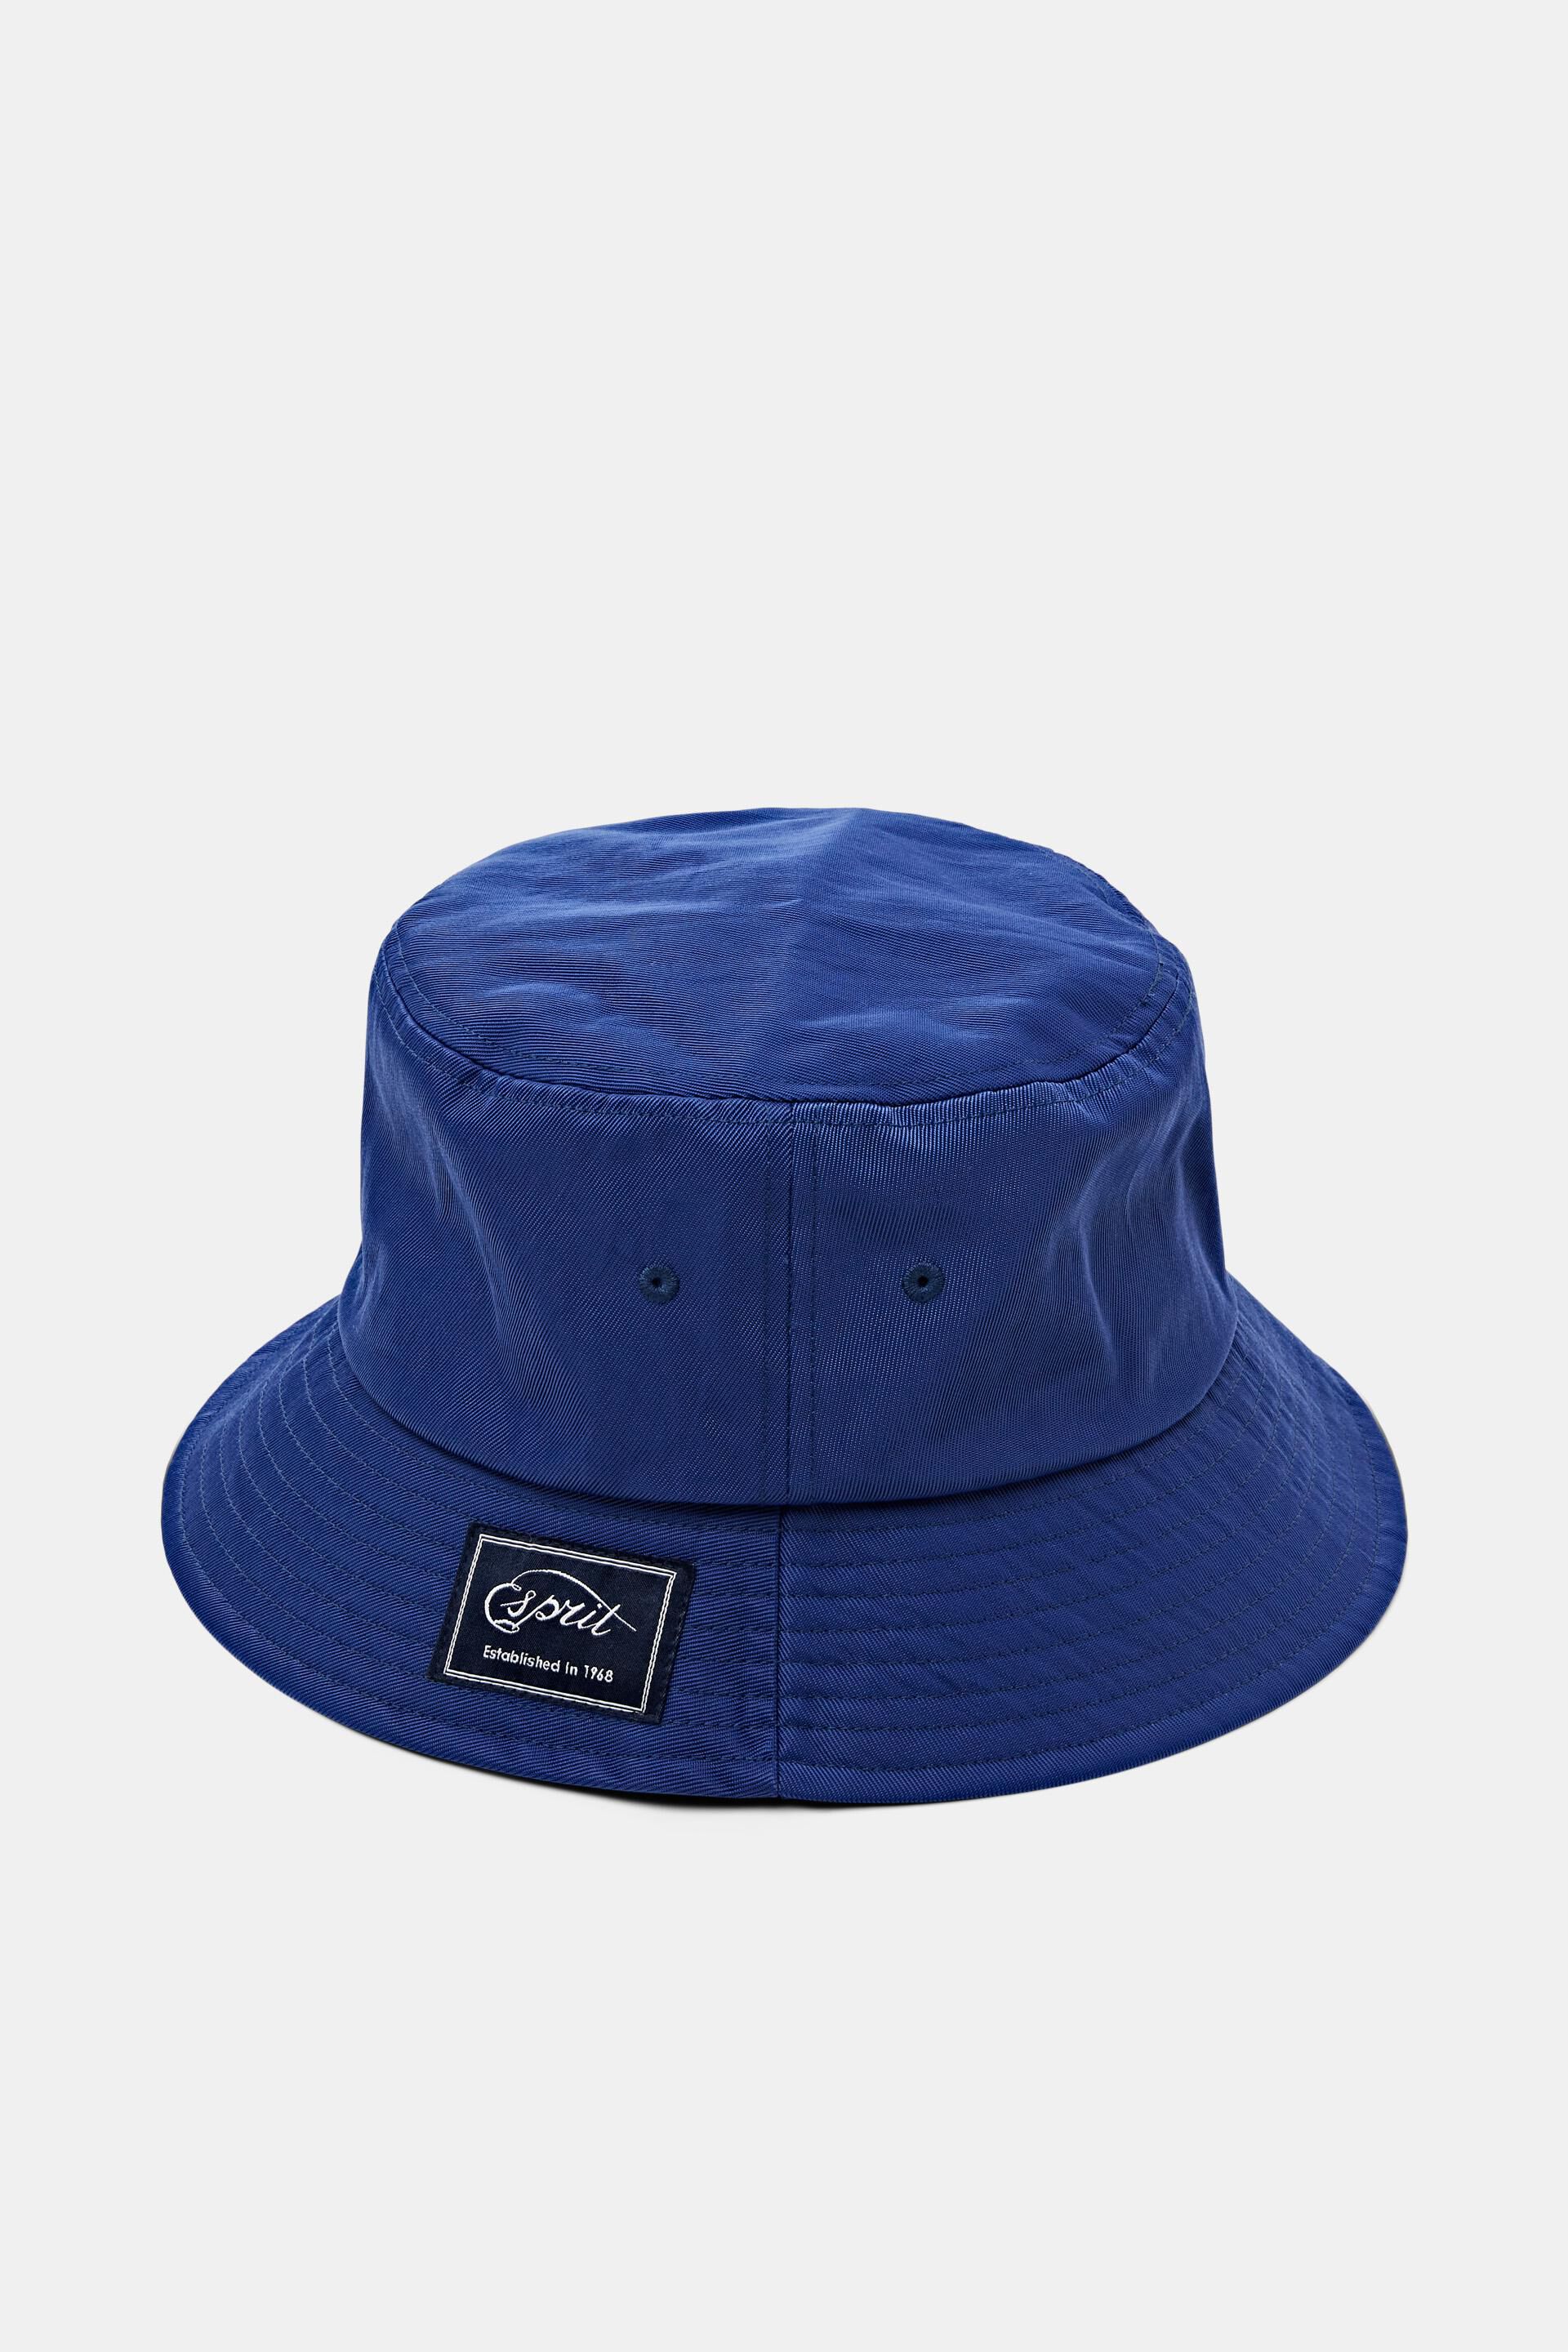 Esprit Mode Hats/Caps